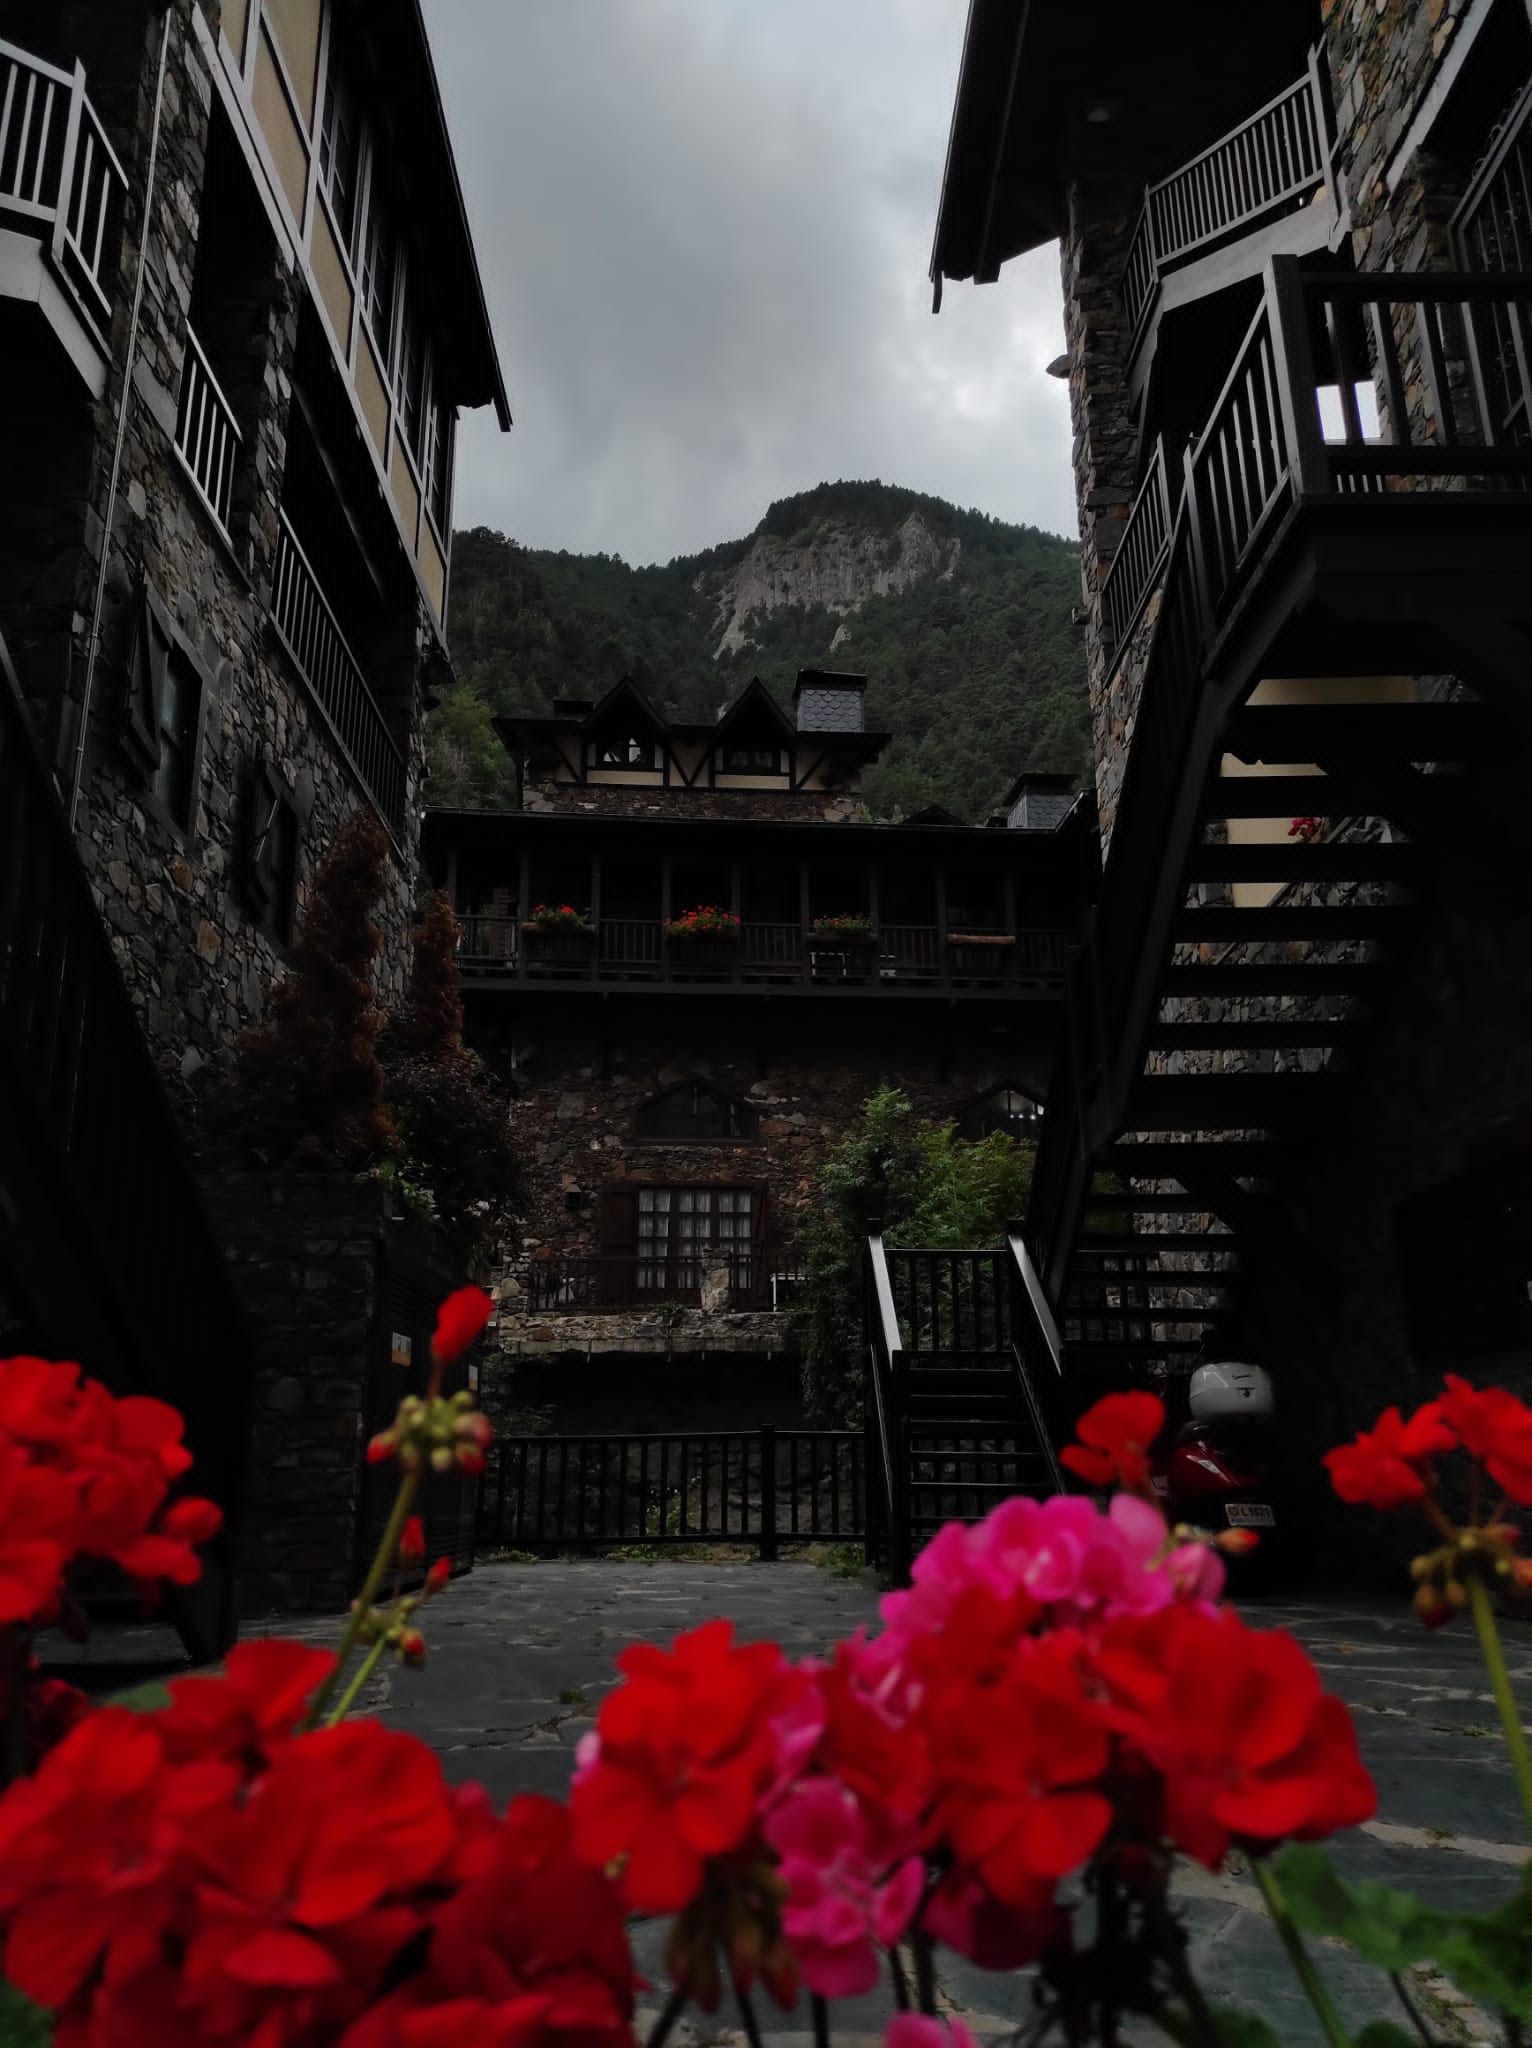 Flors del Pirineu. Arinsal. Andorra. Laia Deltell Baena